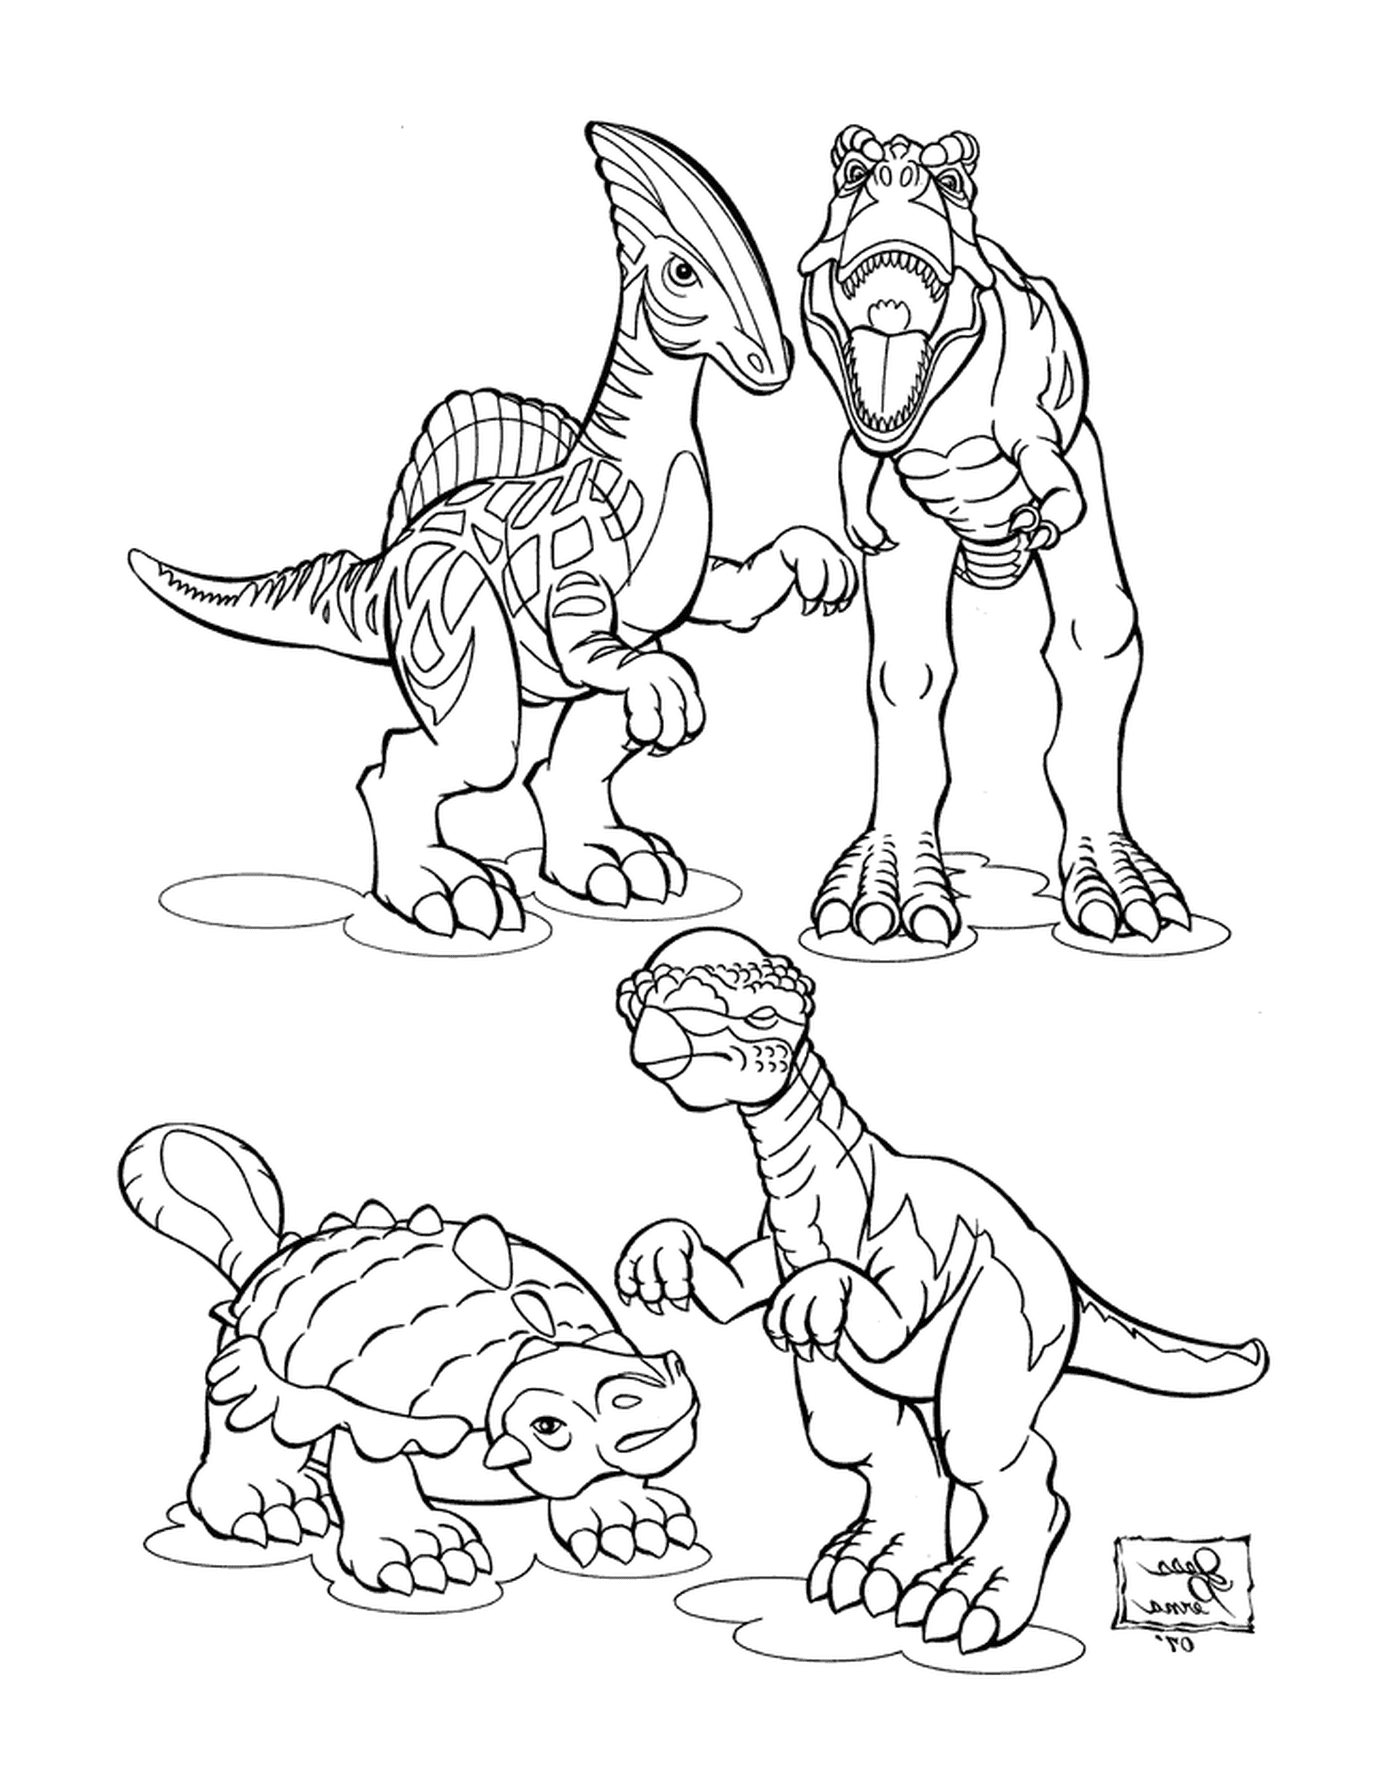  Группа динозавров держится вместе 